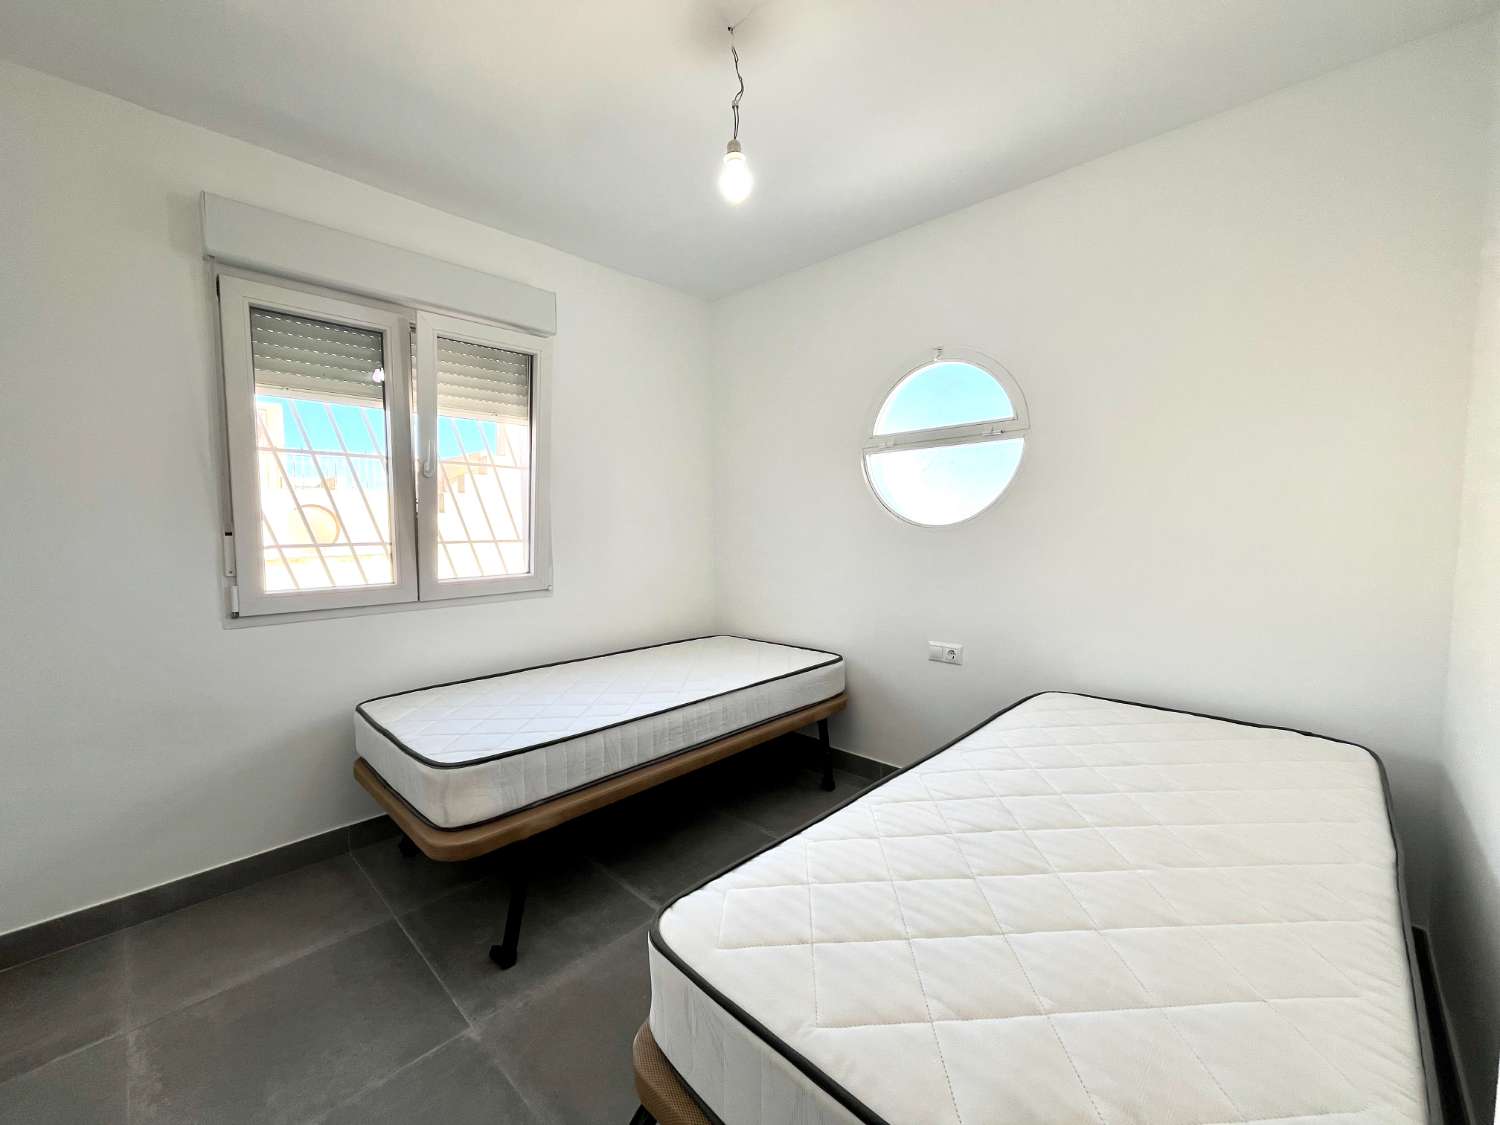 Komplett renovierte Maisonette mit 3 Schlafzimmern, 1 Badezimmer mit Solarium